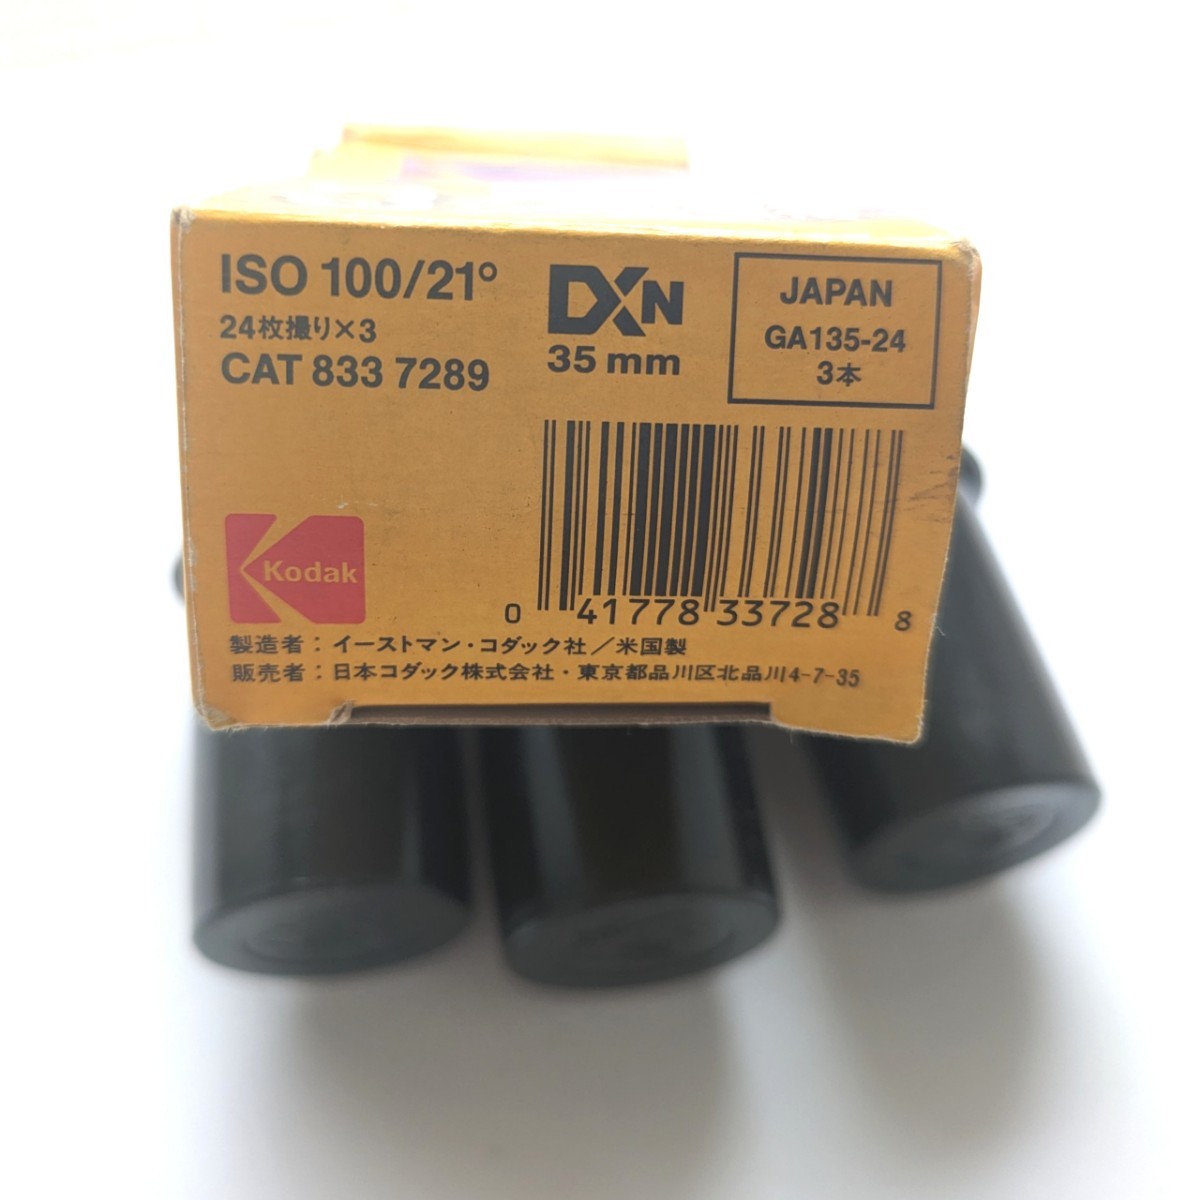 ジャンク品 Kodak コダックスーパーゴールド100 24枚撮り3本パック 有効期限切れ1995/05 35mm iso100/21° レトロ コレクション フィルム_画像3